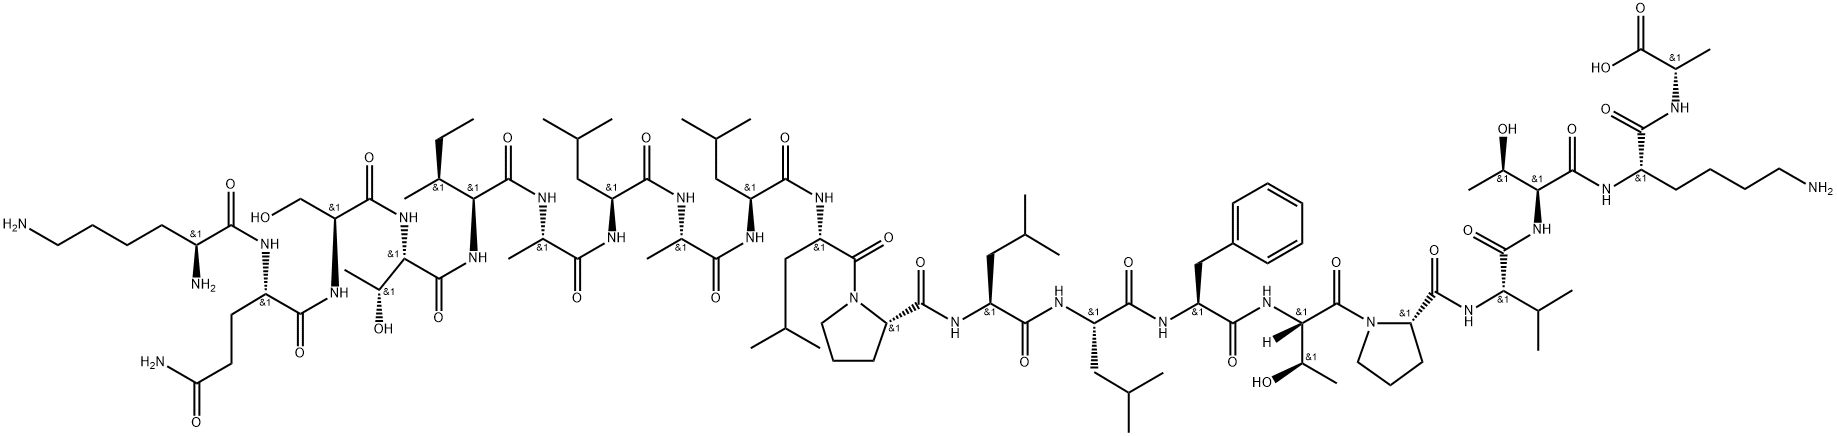 アルカリホスファターゼ反応停止液 化学構造式